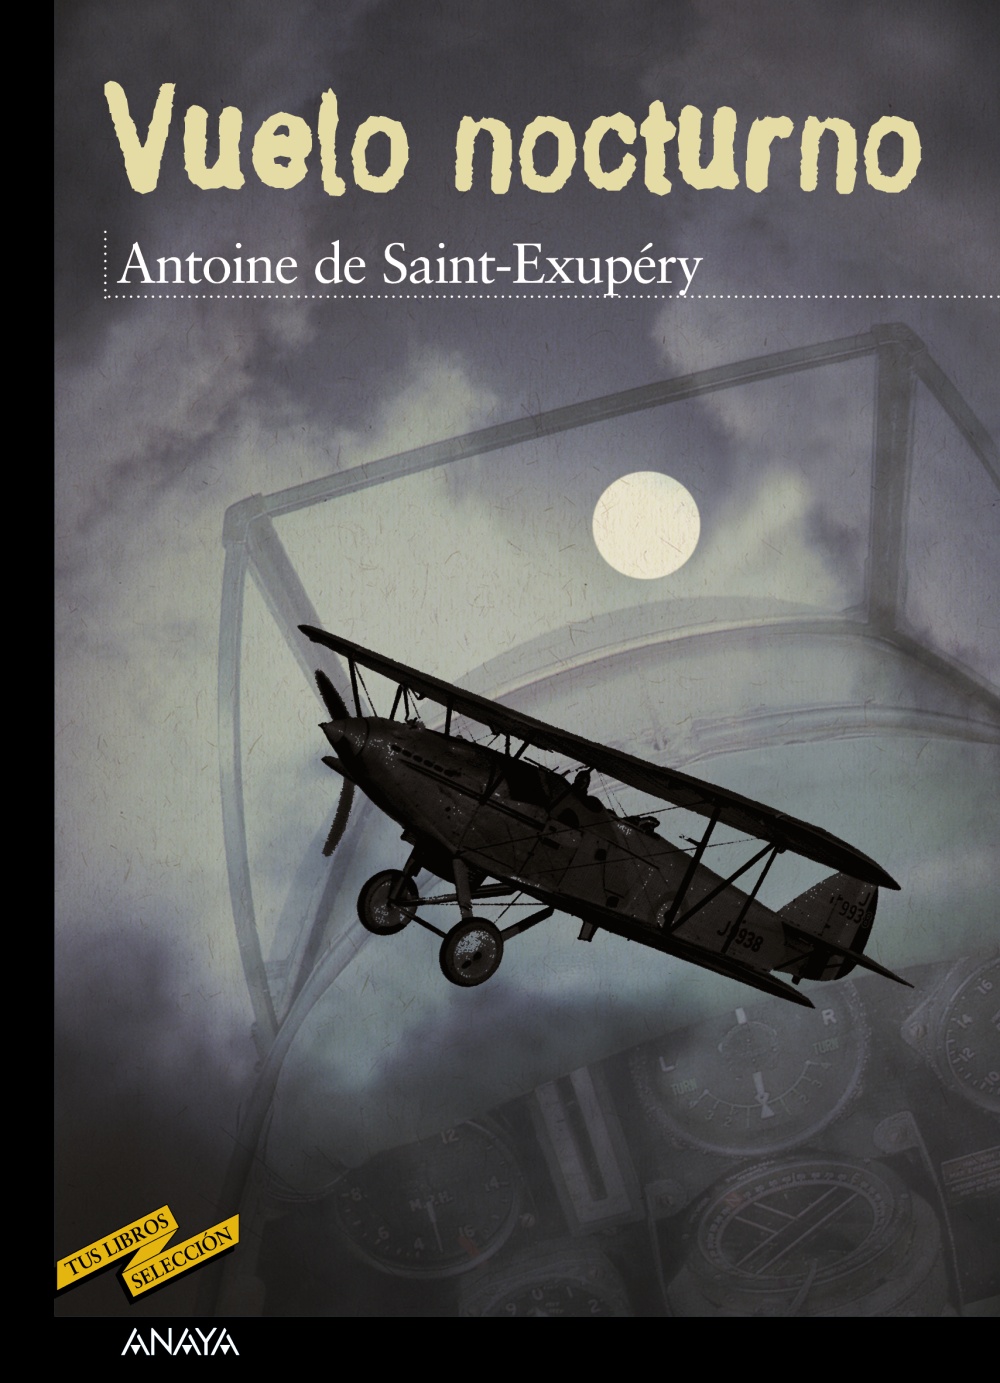 el principito  antoine de saint-exupéry  clásicos para niños  95  páginas  (portada puede variar de la foto)